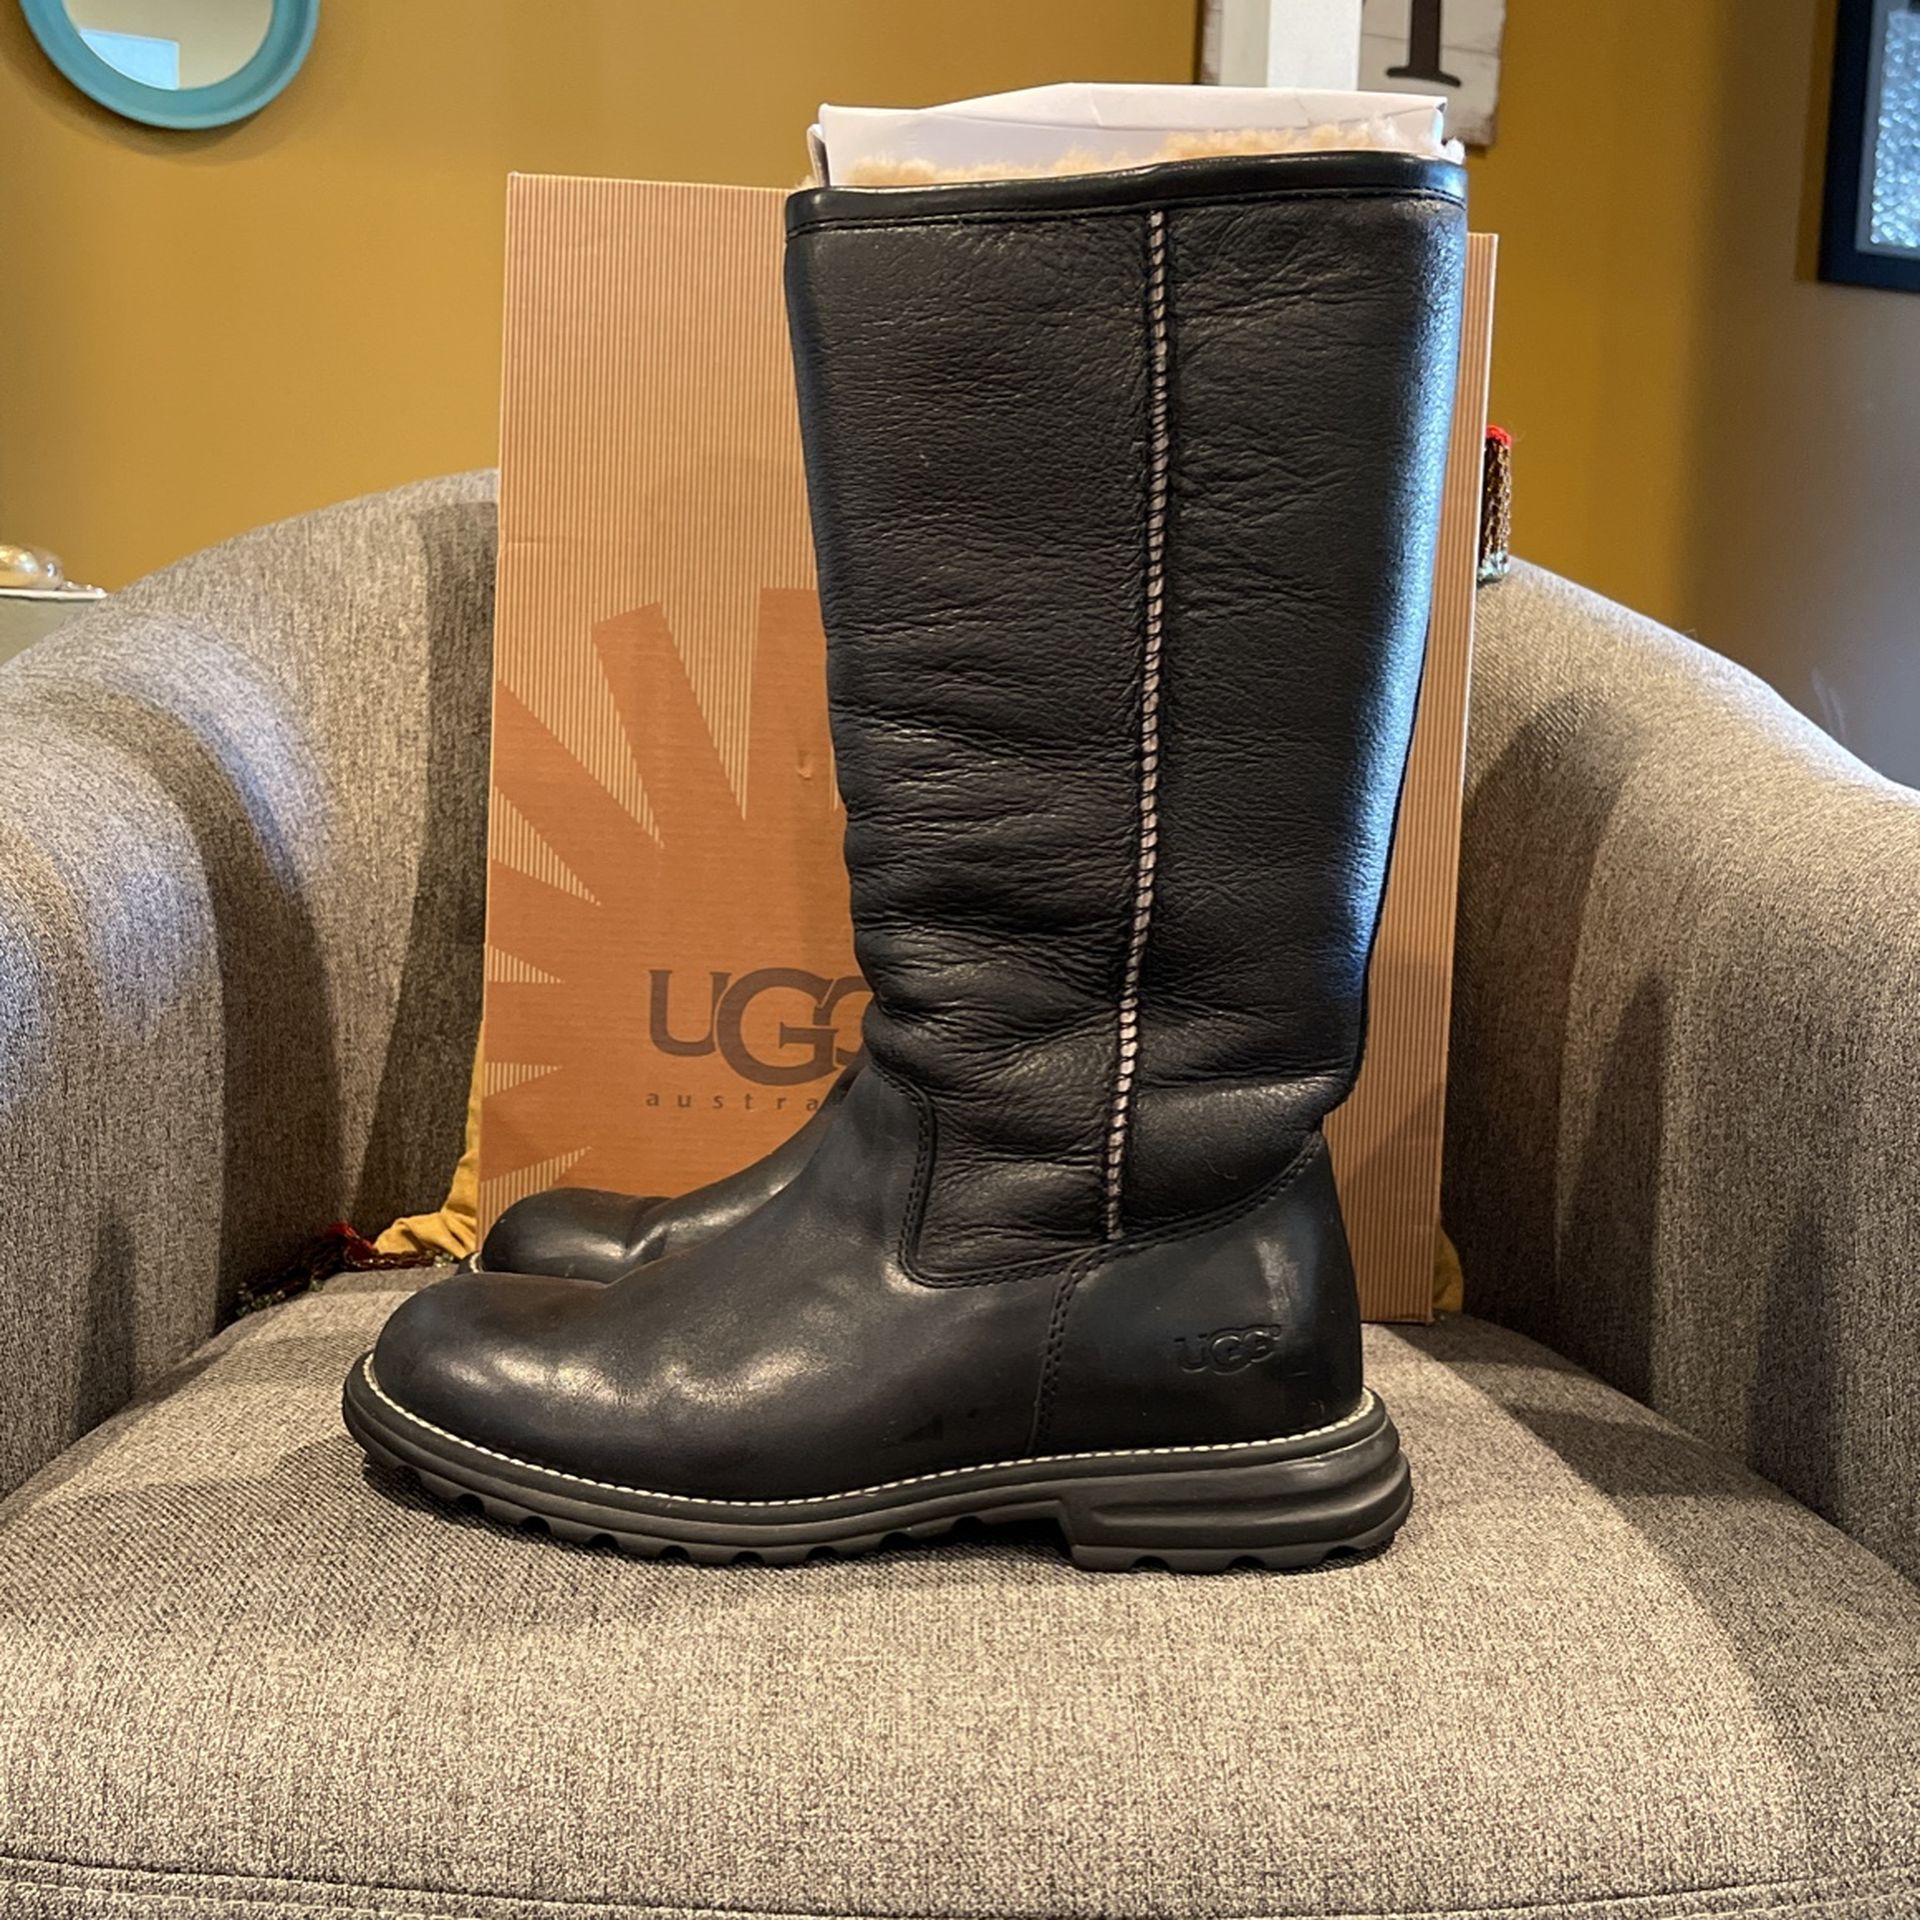 Ugg Rain Boots Size 8